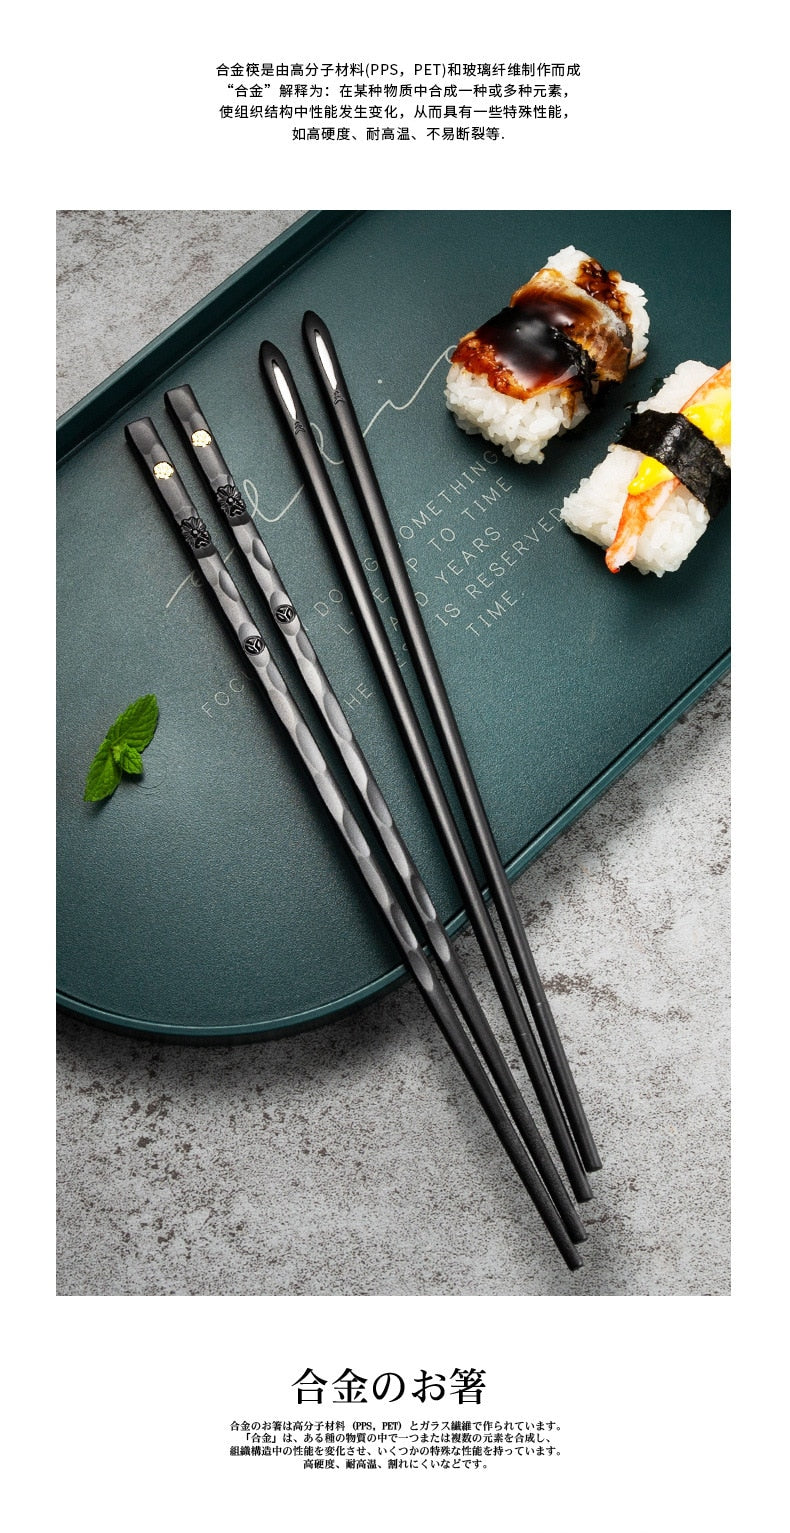 5 Pairs of reusable metal chopsticks